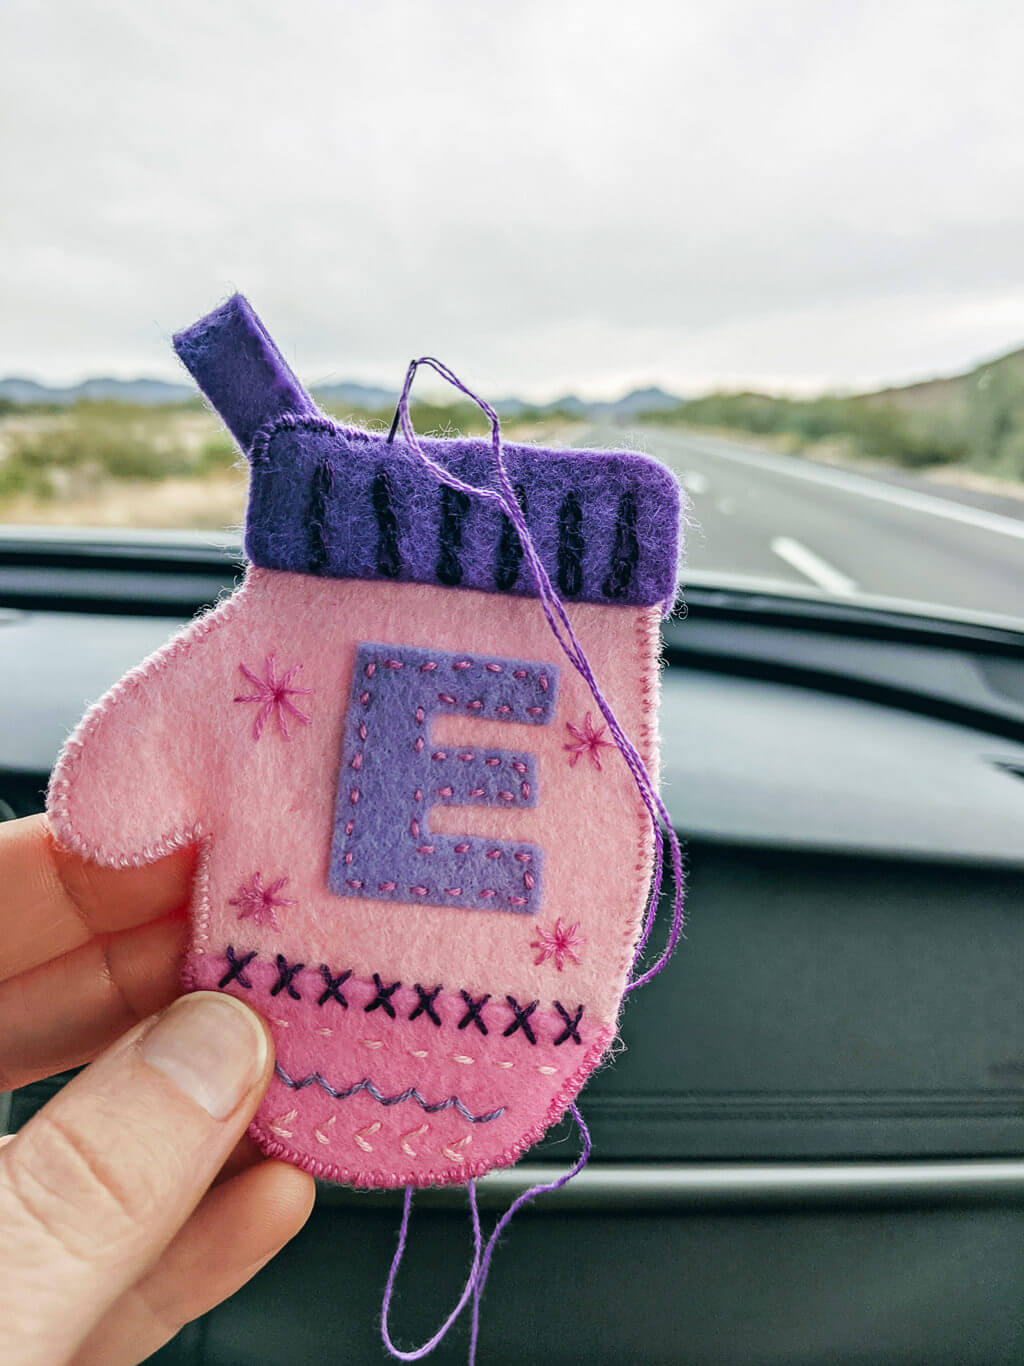 Making felt mittens ornaments on a desert roadtrip